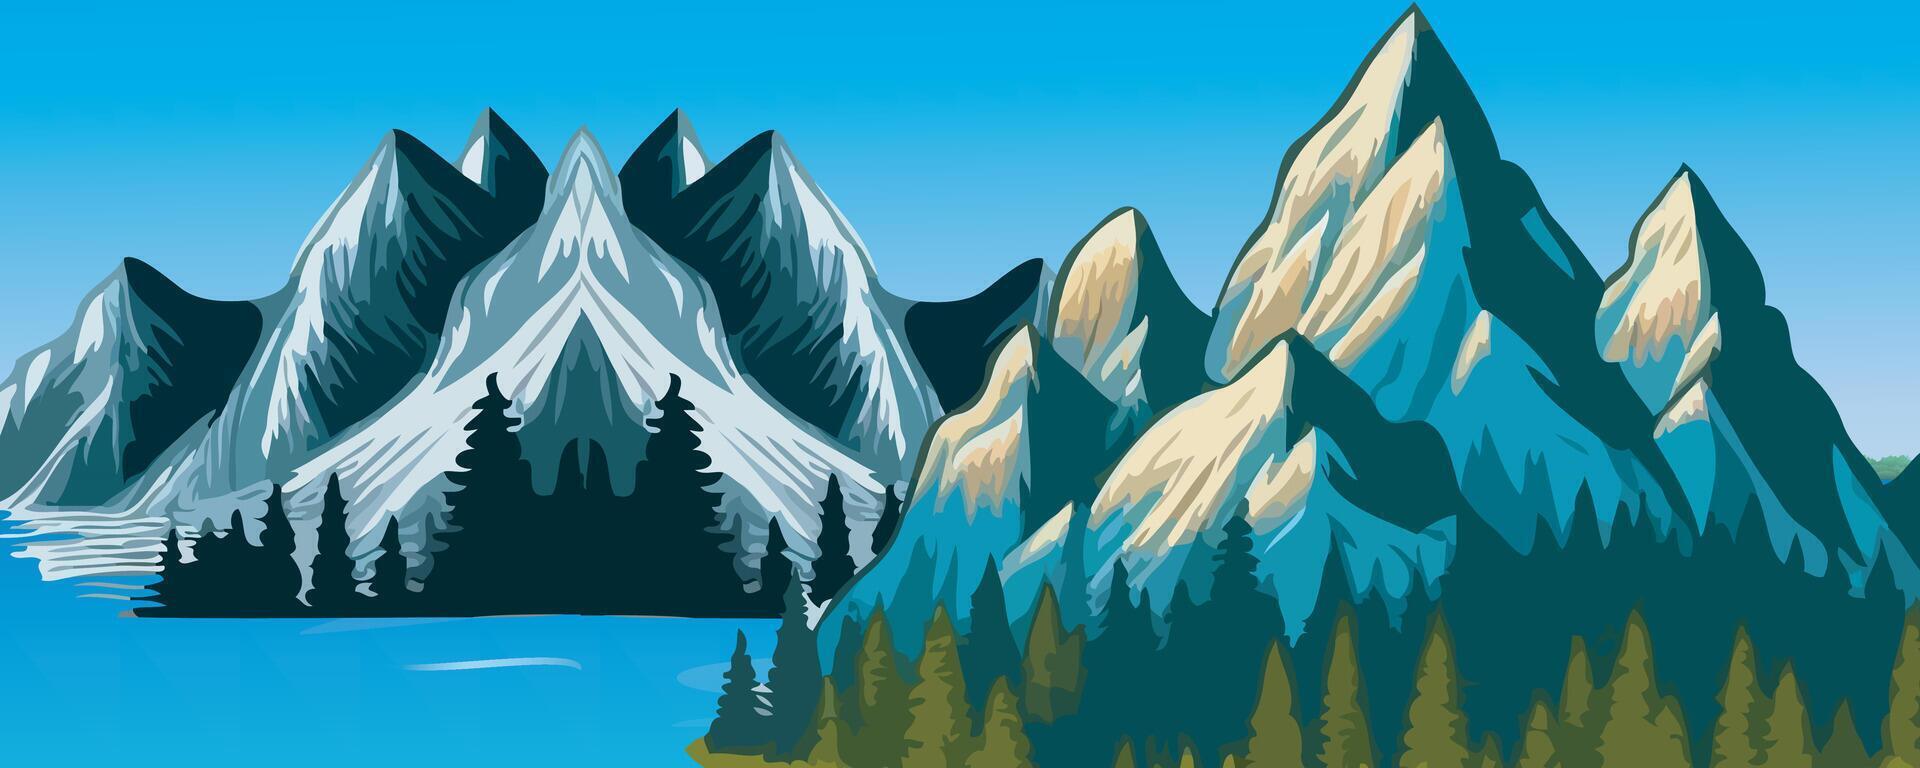 stor flod med berg och blå himmel för tecknad serie vektor